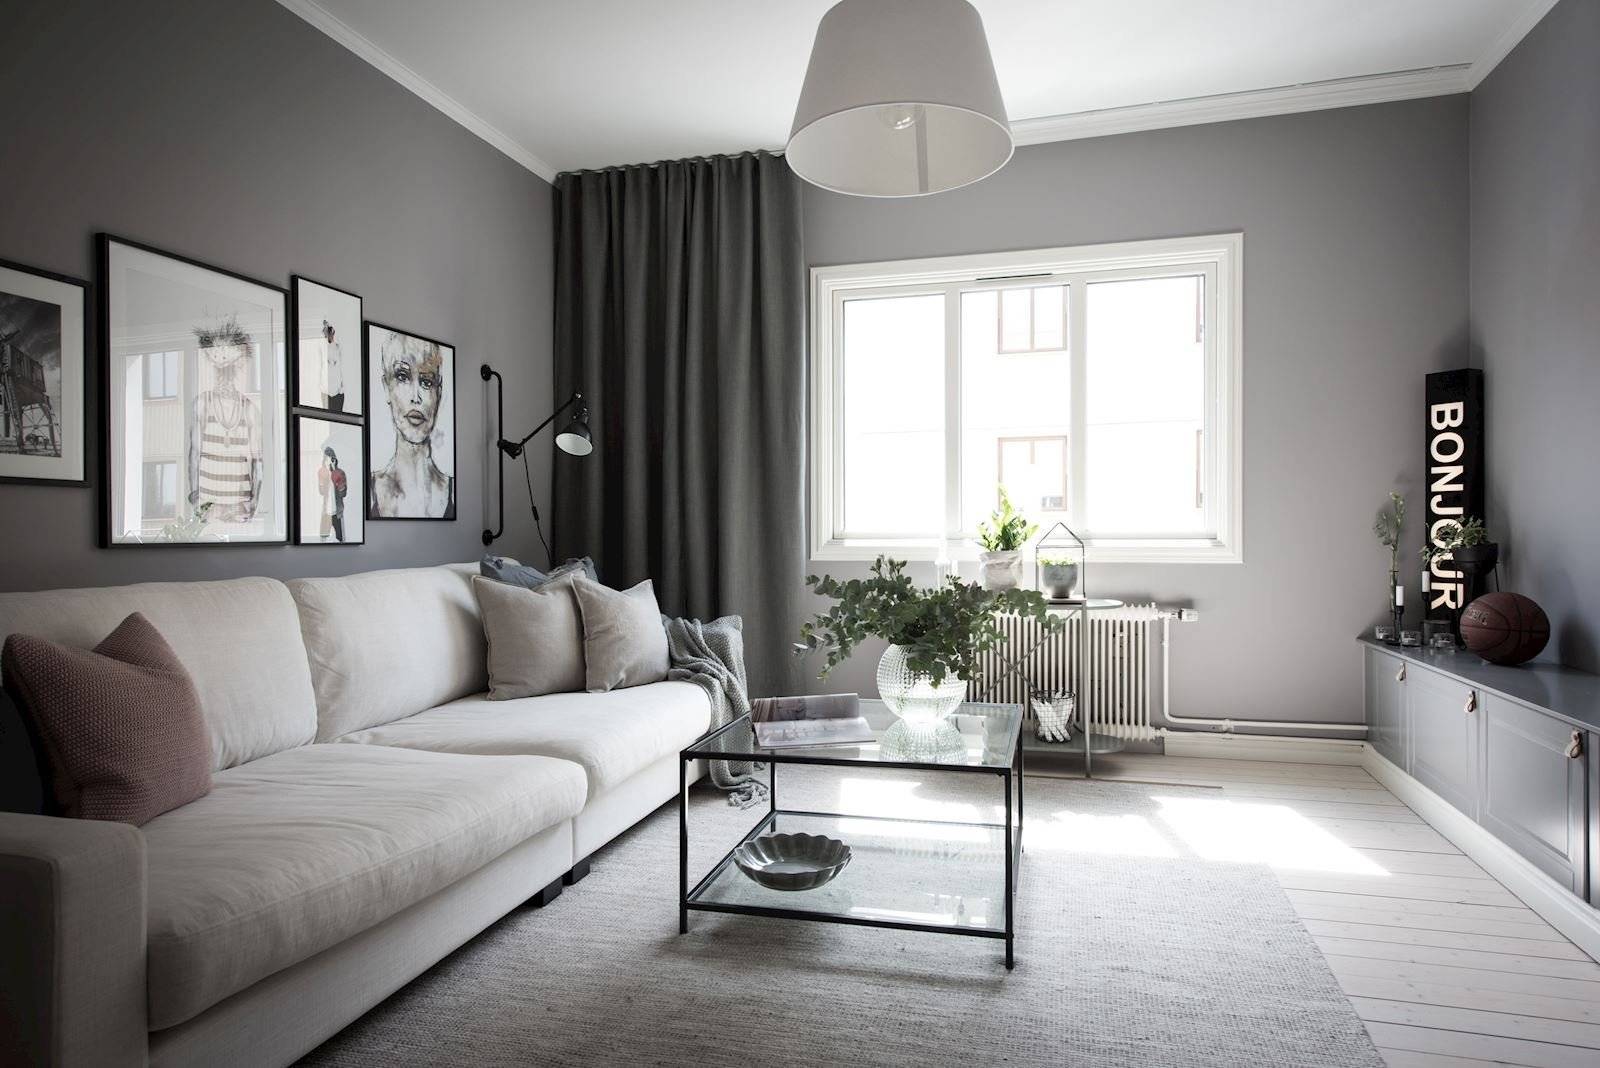 Черно-белая гостиная: отделка, стенка и другие элементы в интерьере